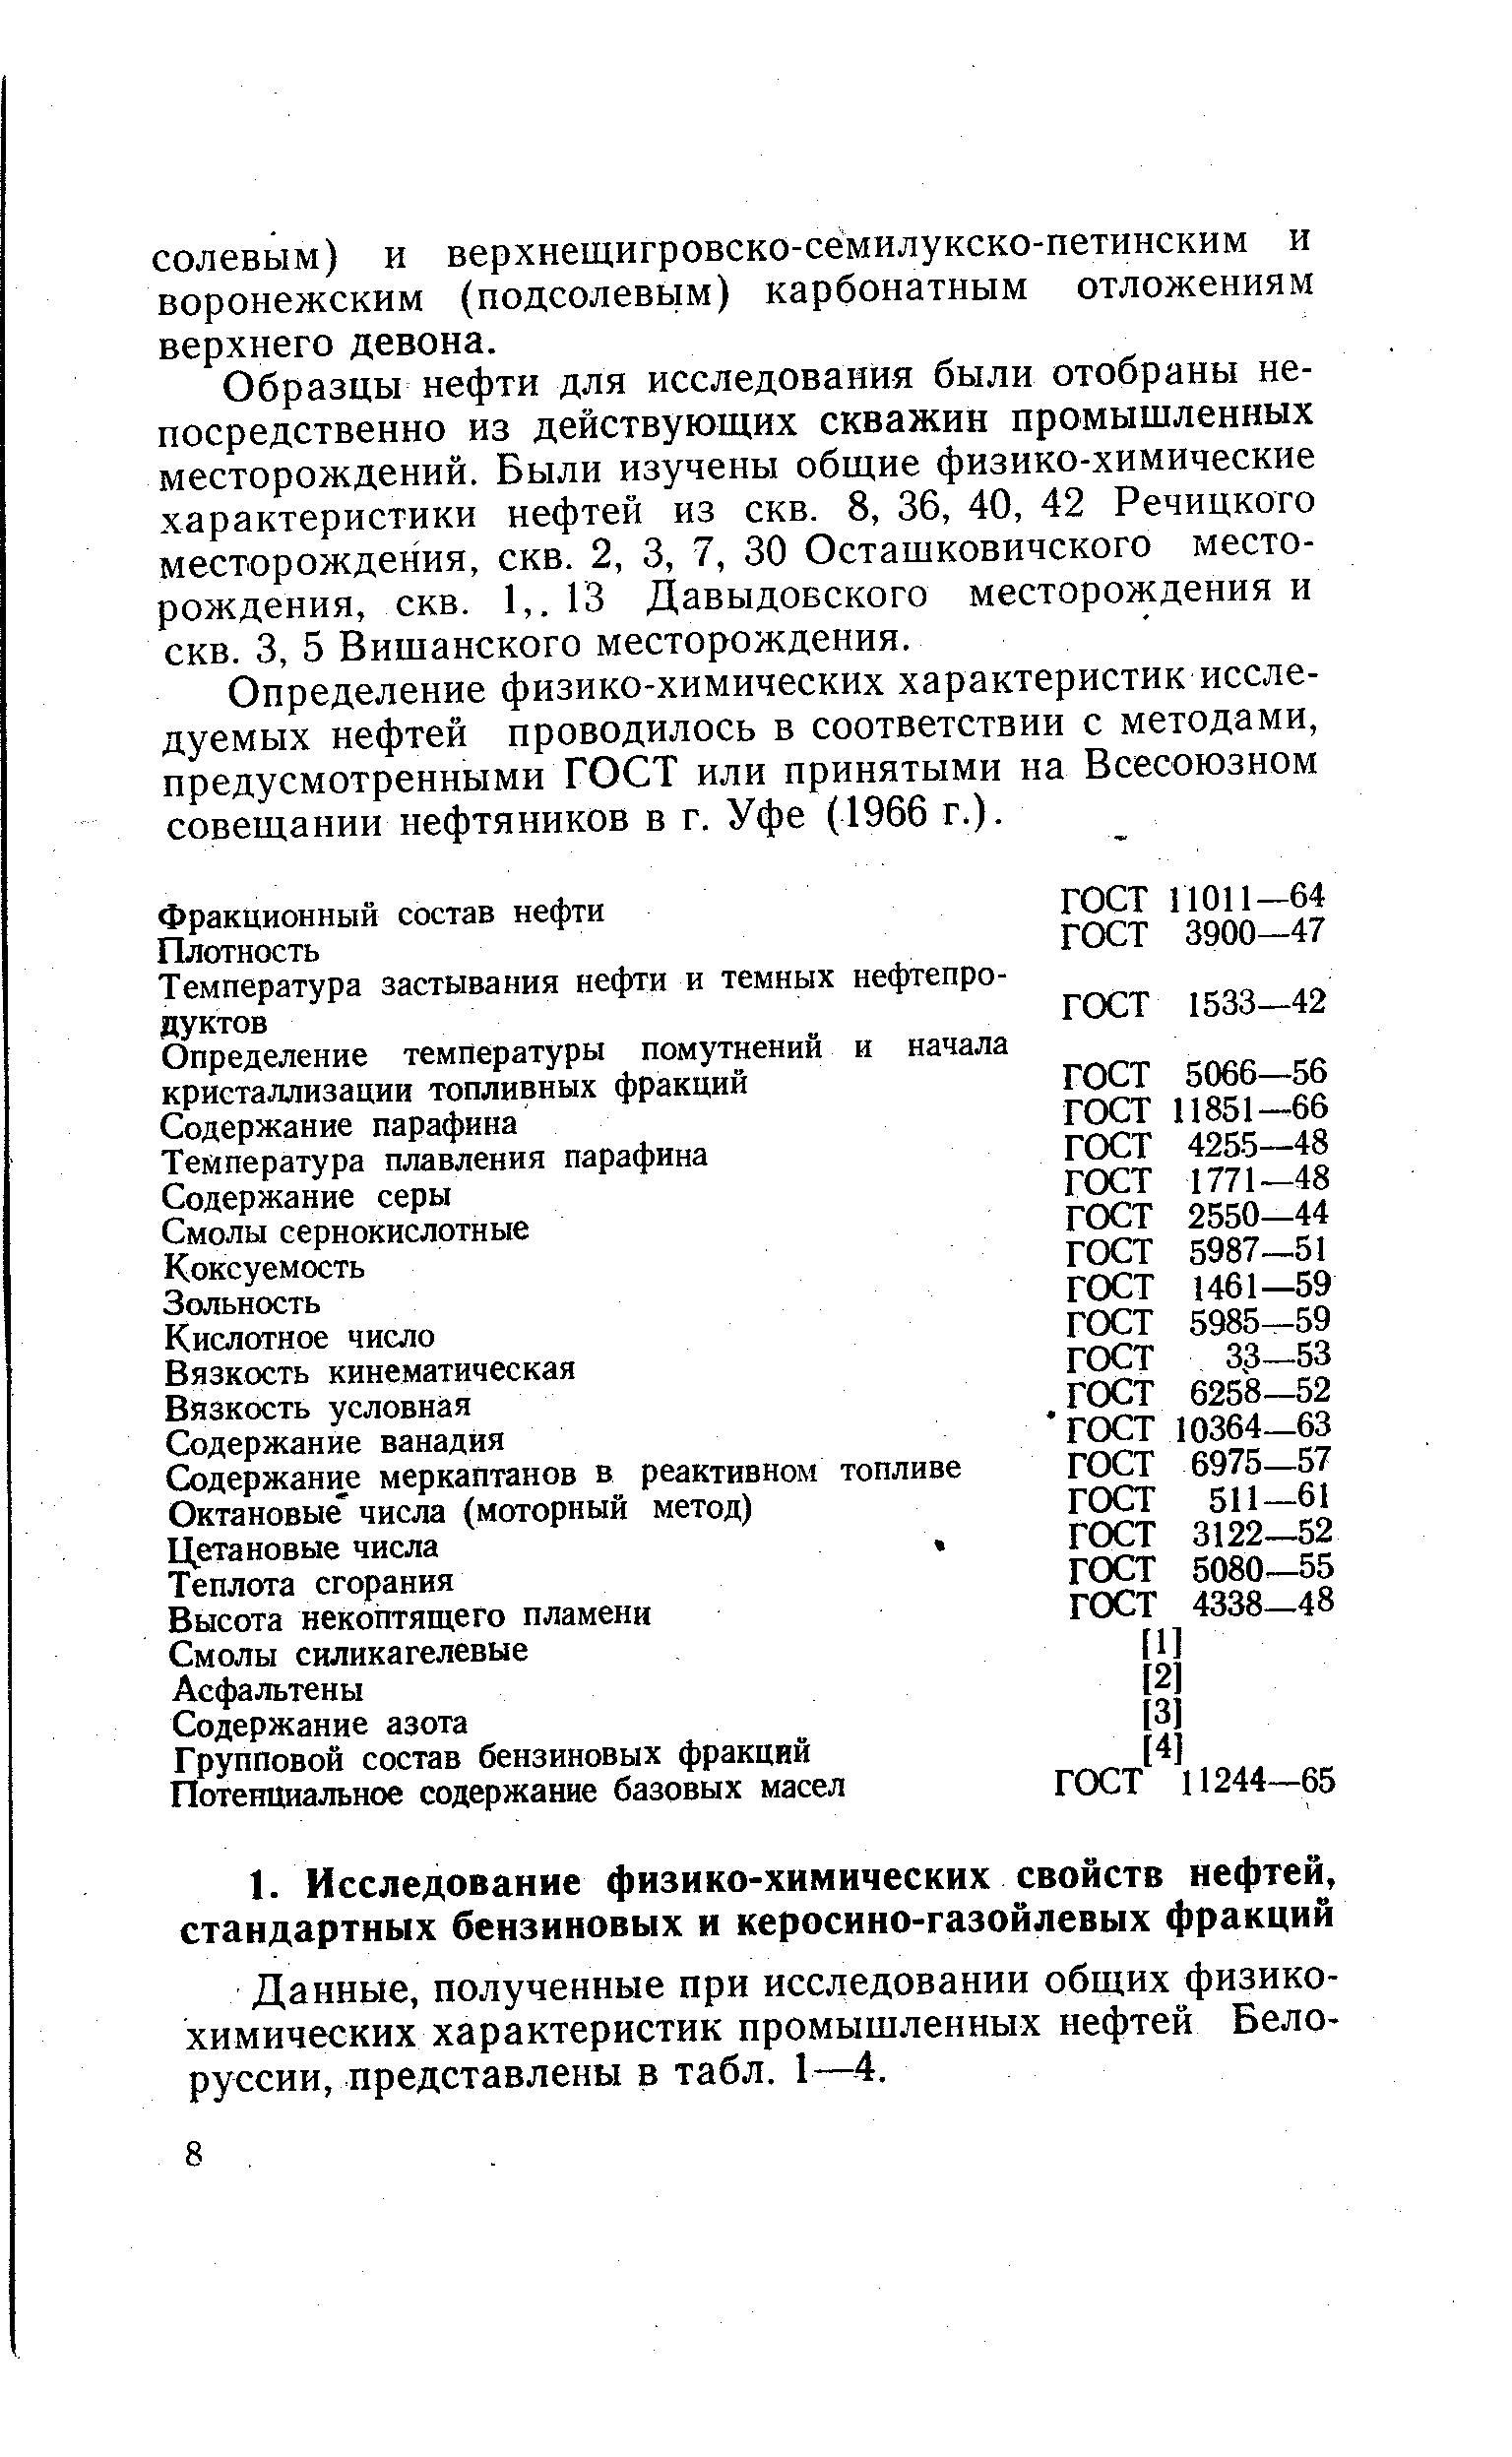 Данные, полученные при исследовании общих физикохимических характеристик промышленных нефтей Белоруссии, представлены в табл. 1—4.